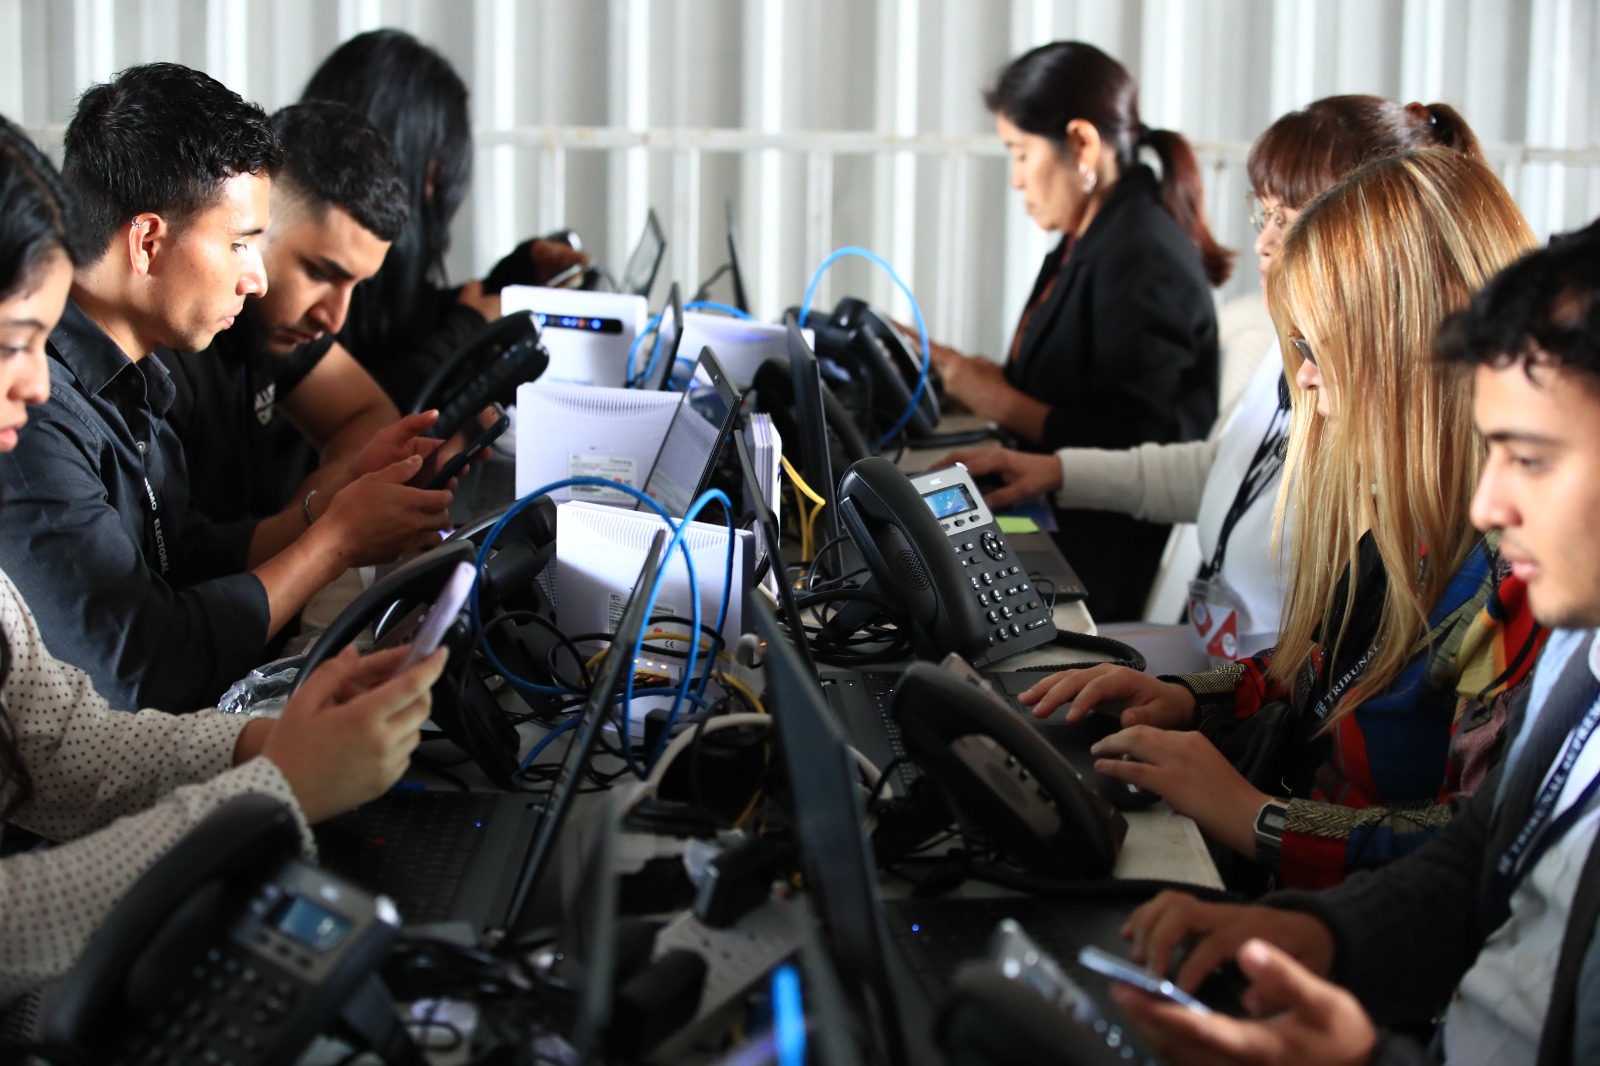 Expertos recomiendan que la auditoria al sistema informático sea independiente, para dar garantías al proceso. Fotografía: Prensa Libre. 